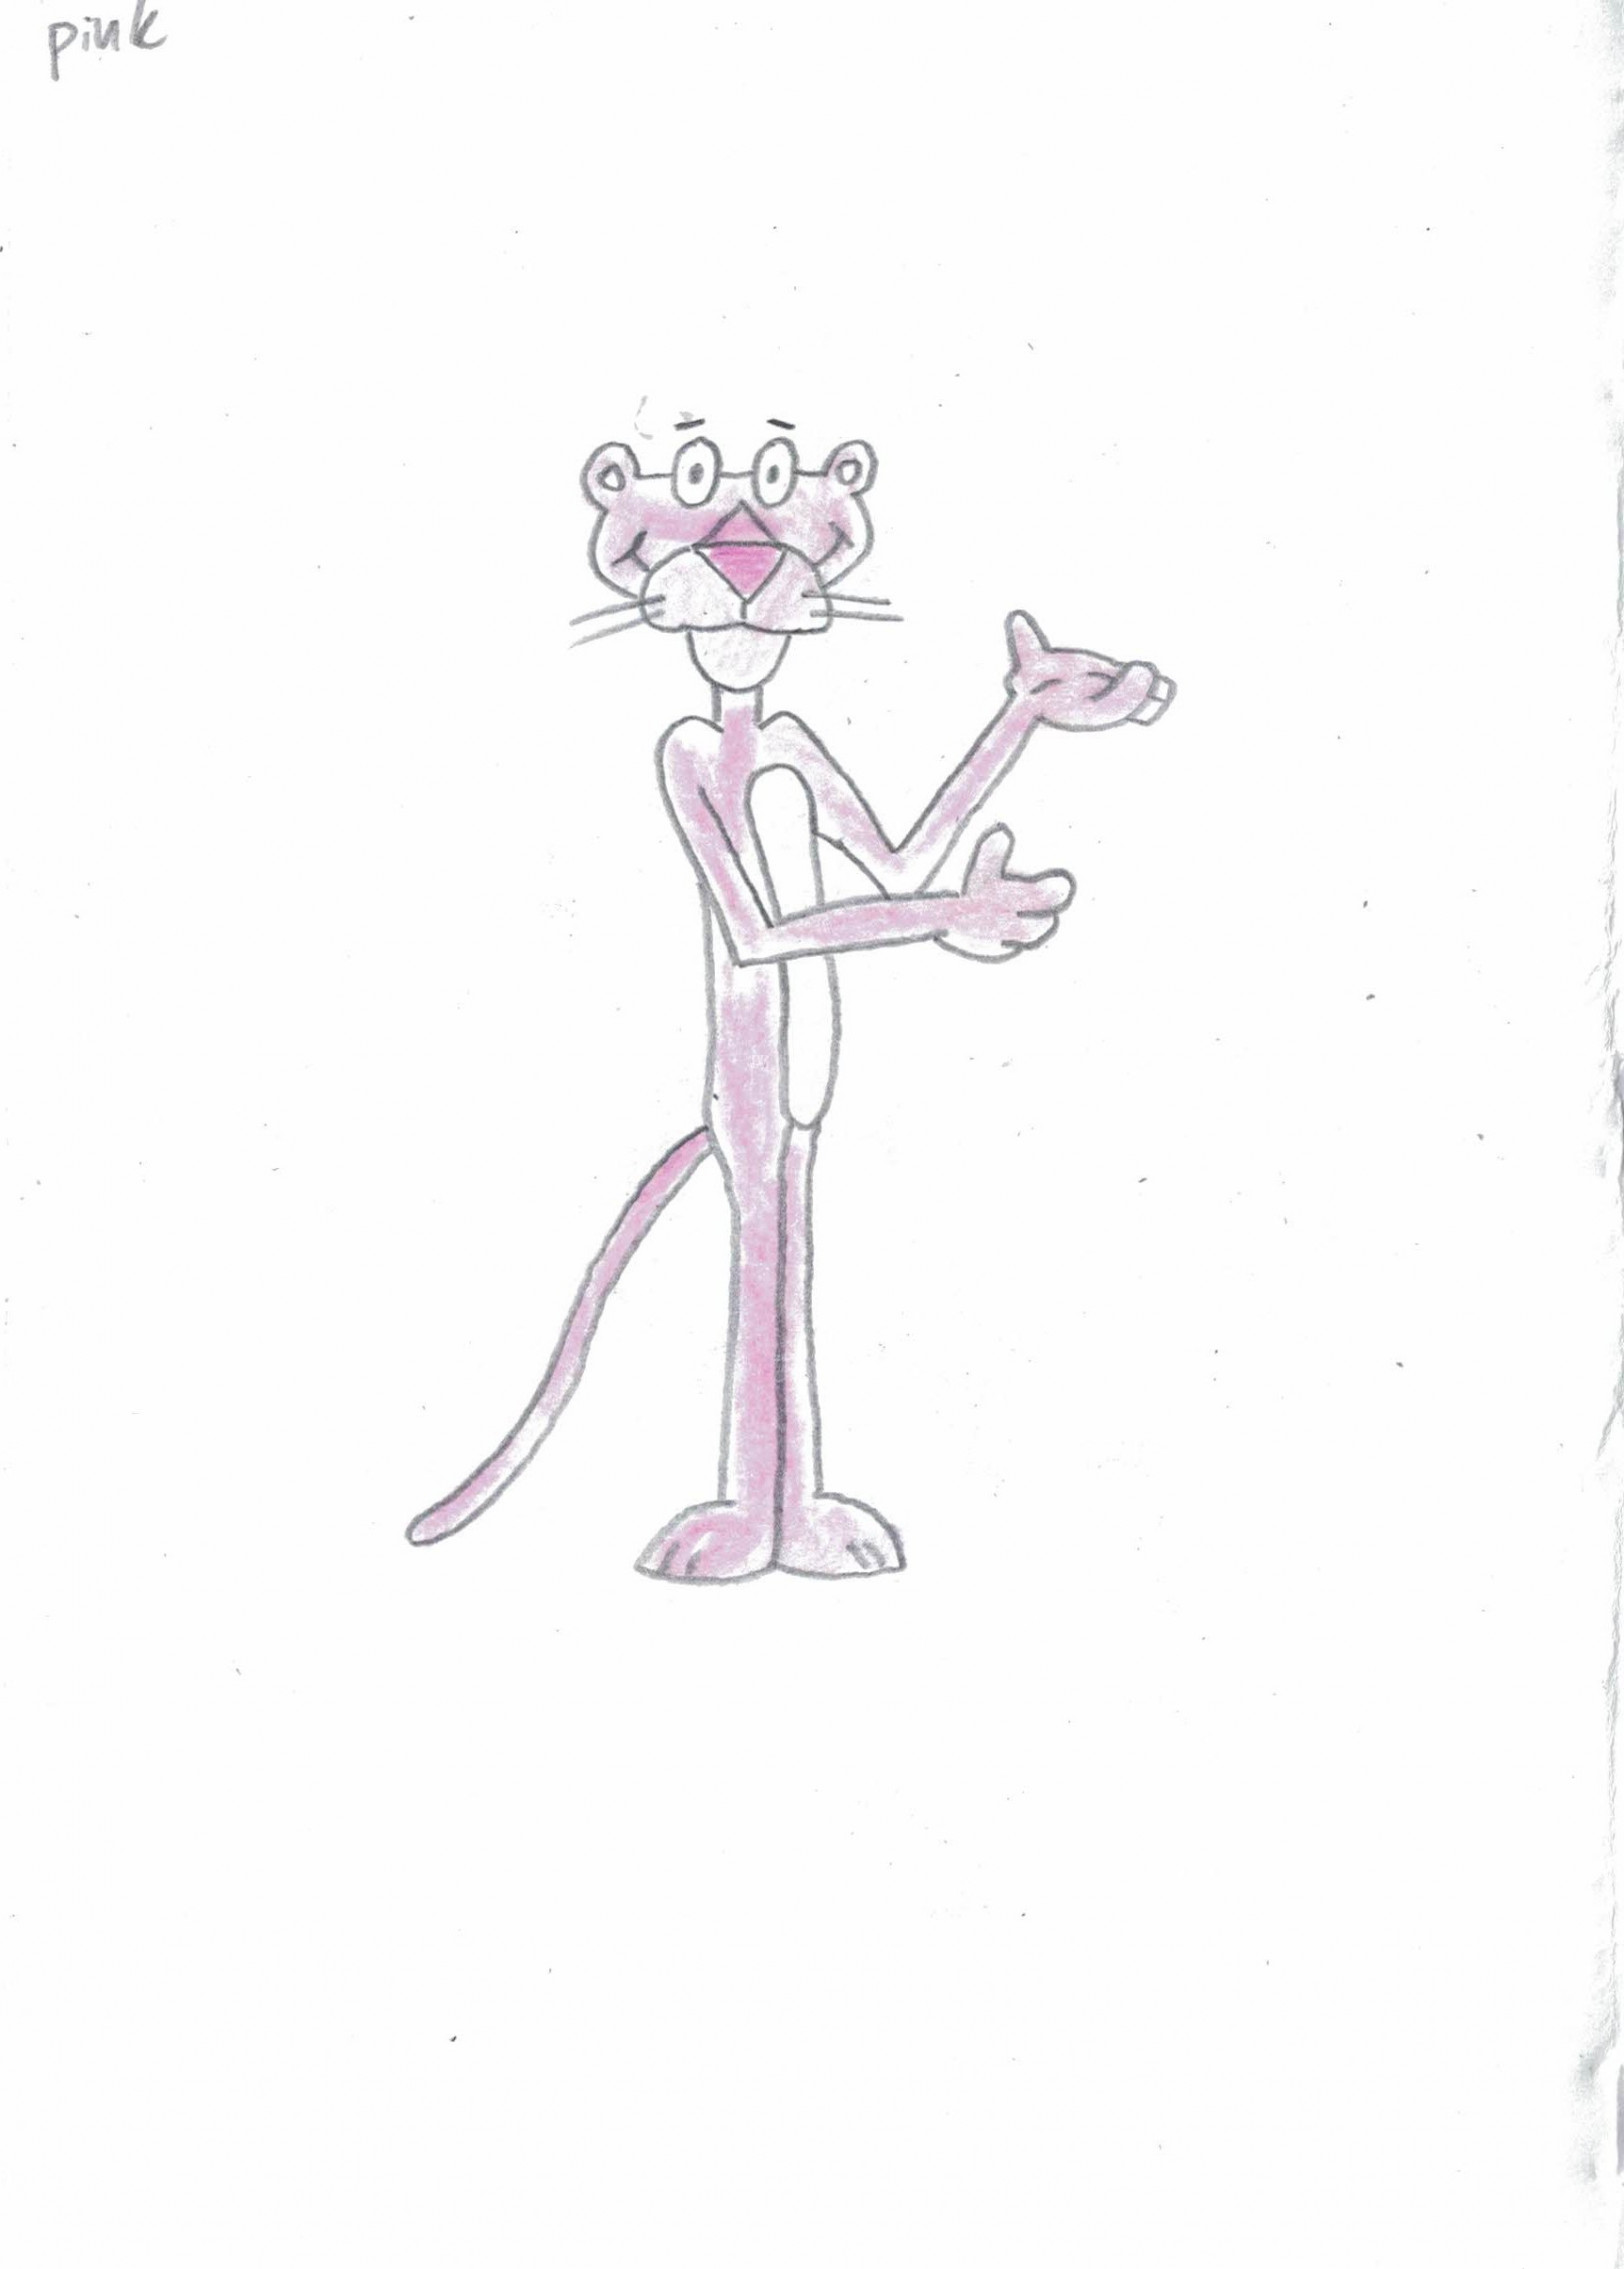 Lot Detail - Friz Freleng Hand-Drawn Pink Panther Sketch